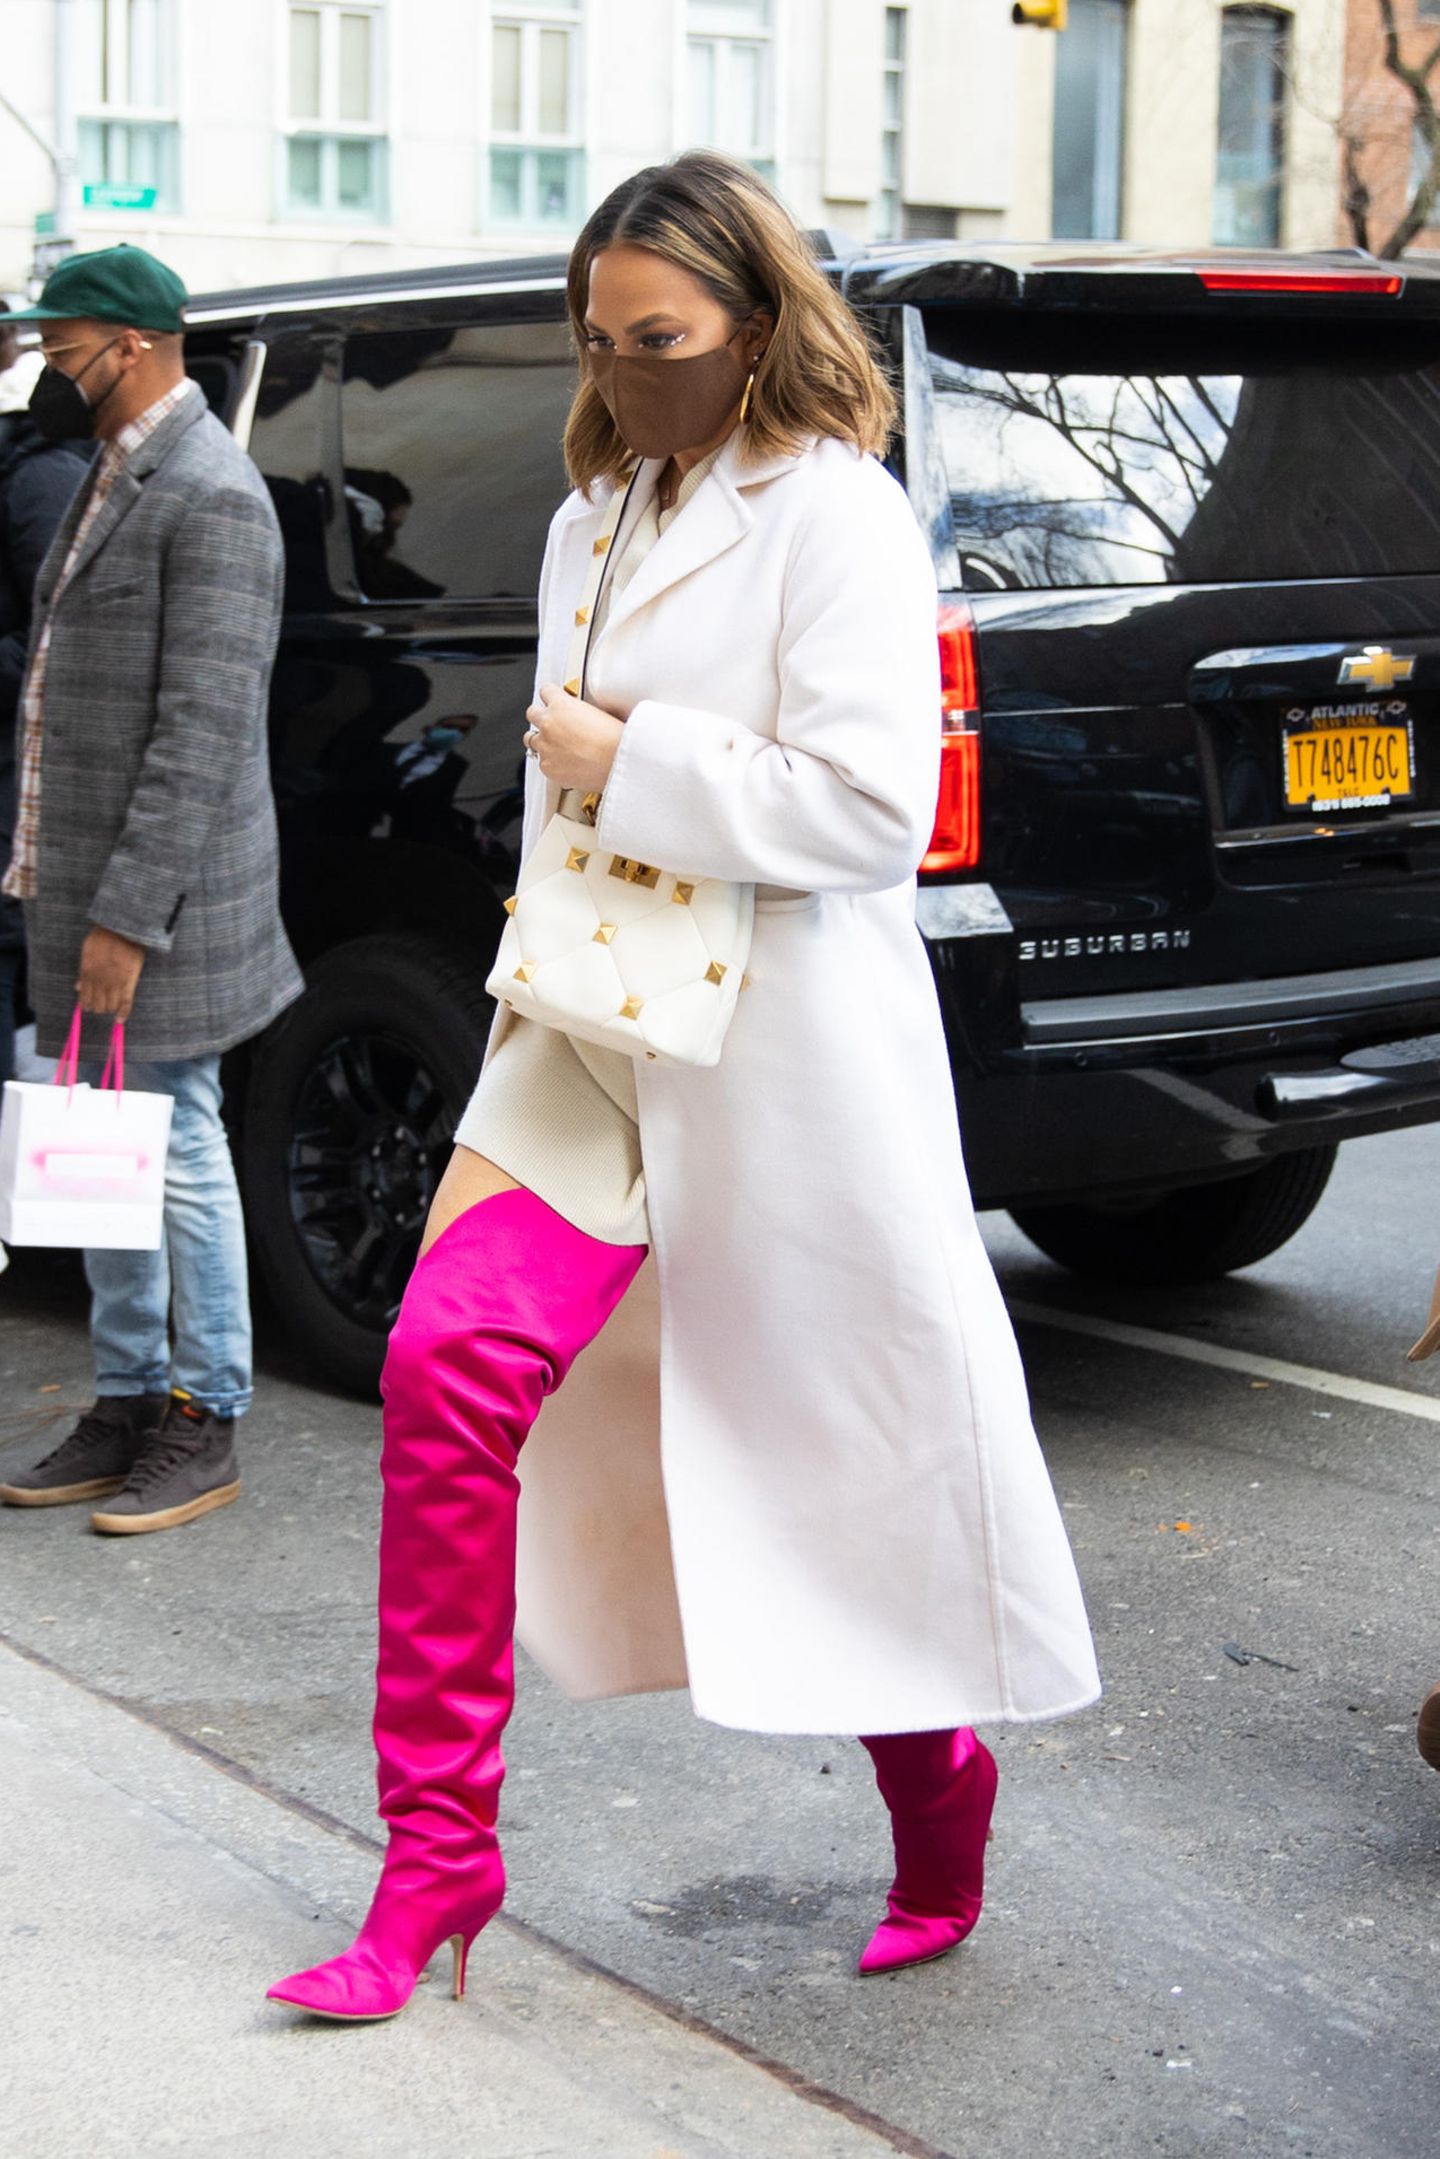 Model und Zweifach-Mama Chrissy Teigen trägt die ultimative Farbkombi: Weiß und Pink. Zugegeben, diese pinken Overknees sind definitiv nicht basic, sie machen ihren schlichten Look allerdings richtig stylisch. Einfach der Hammer!